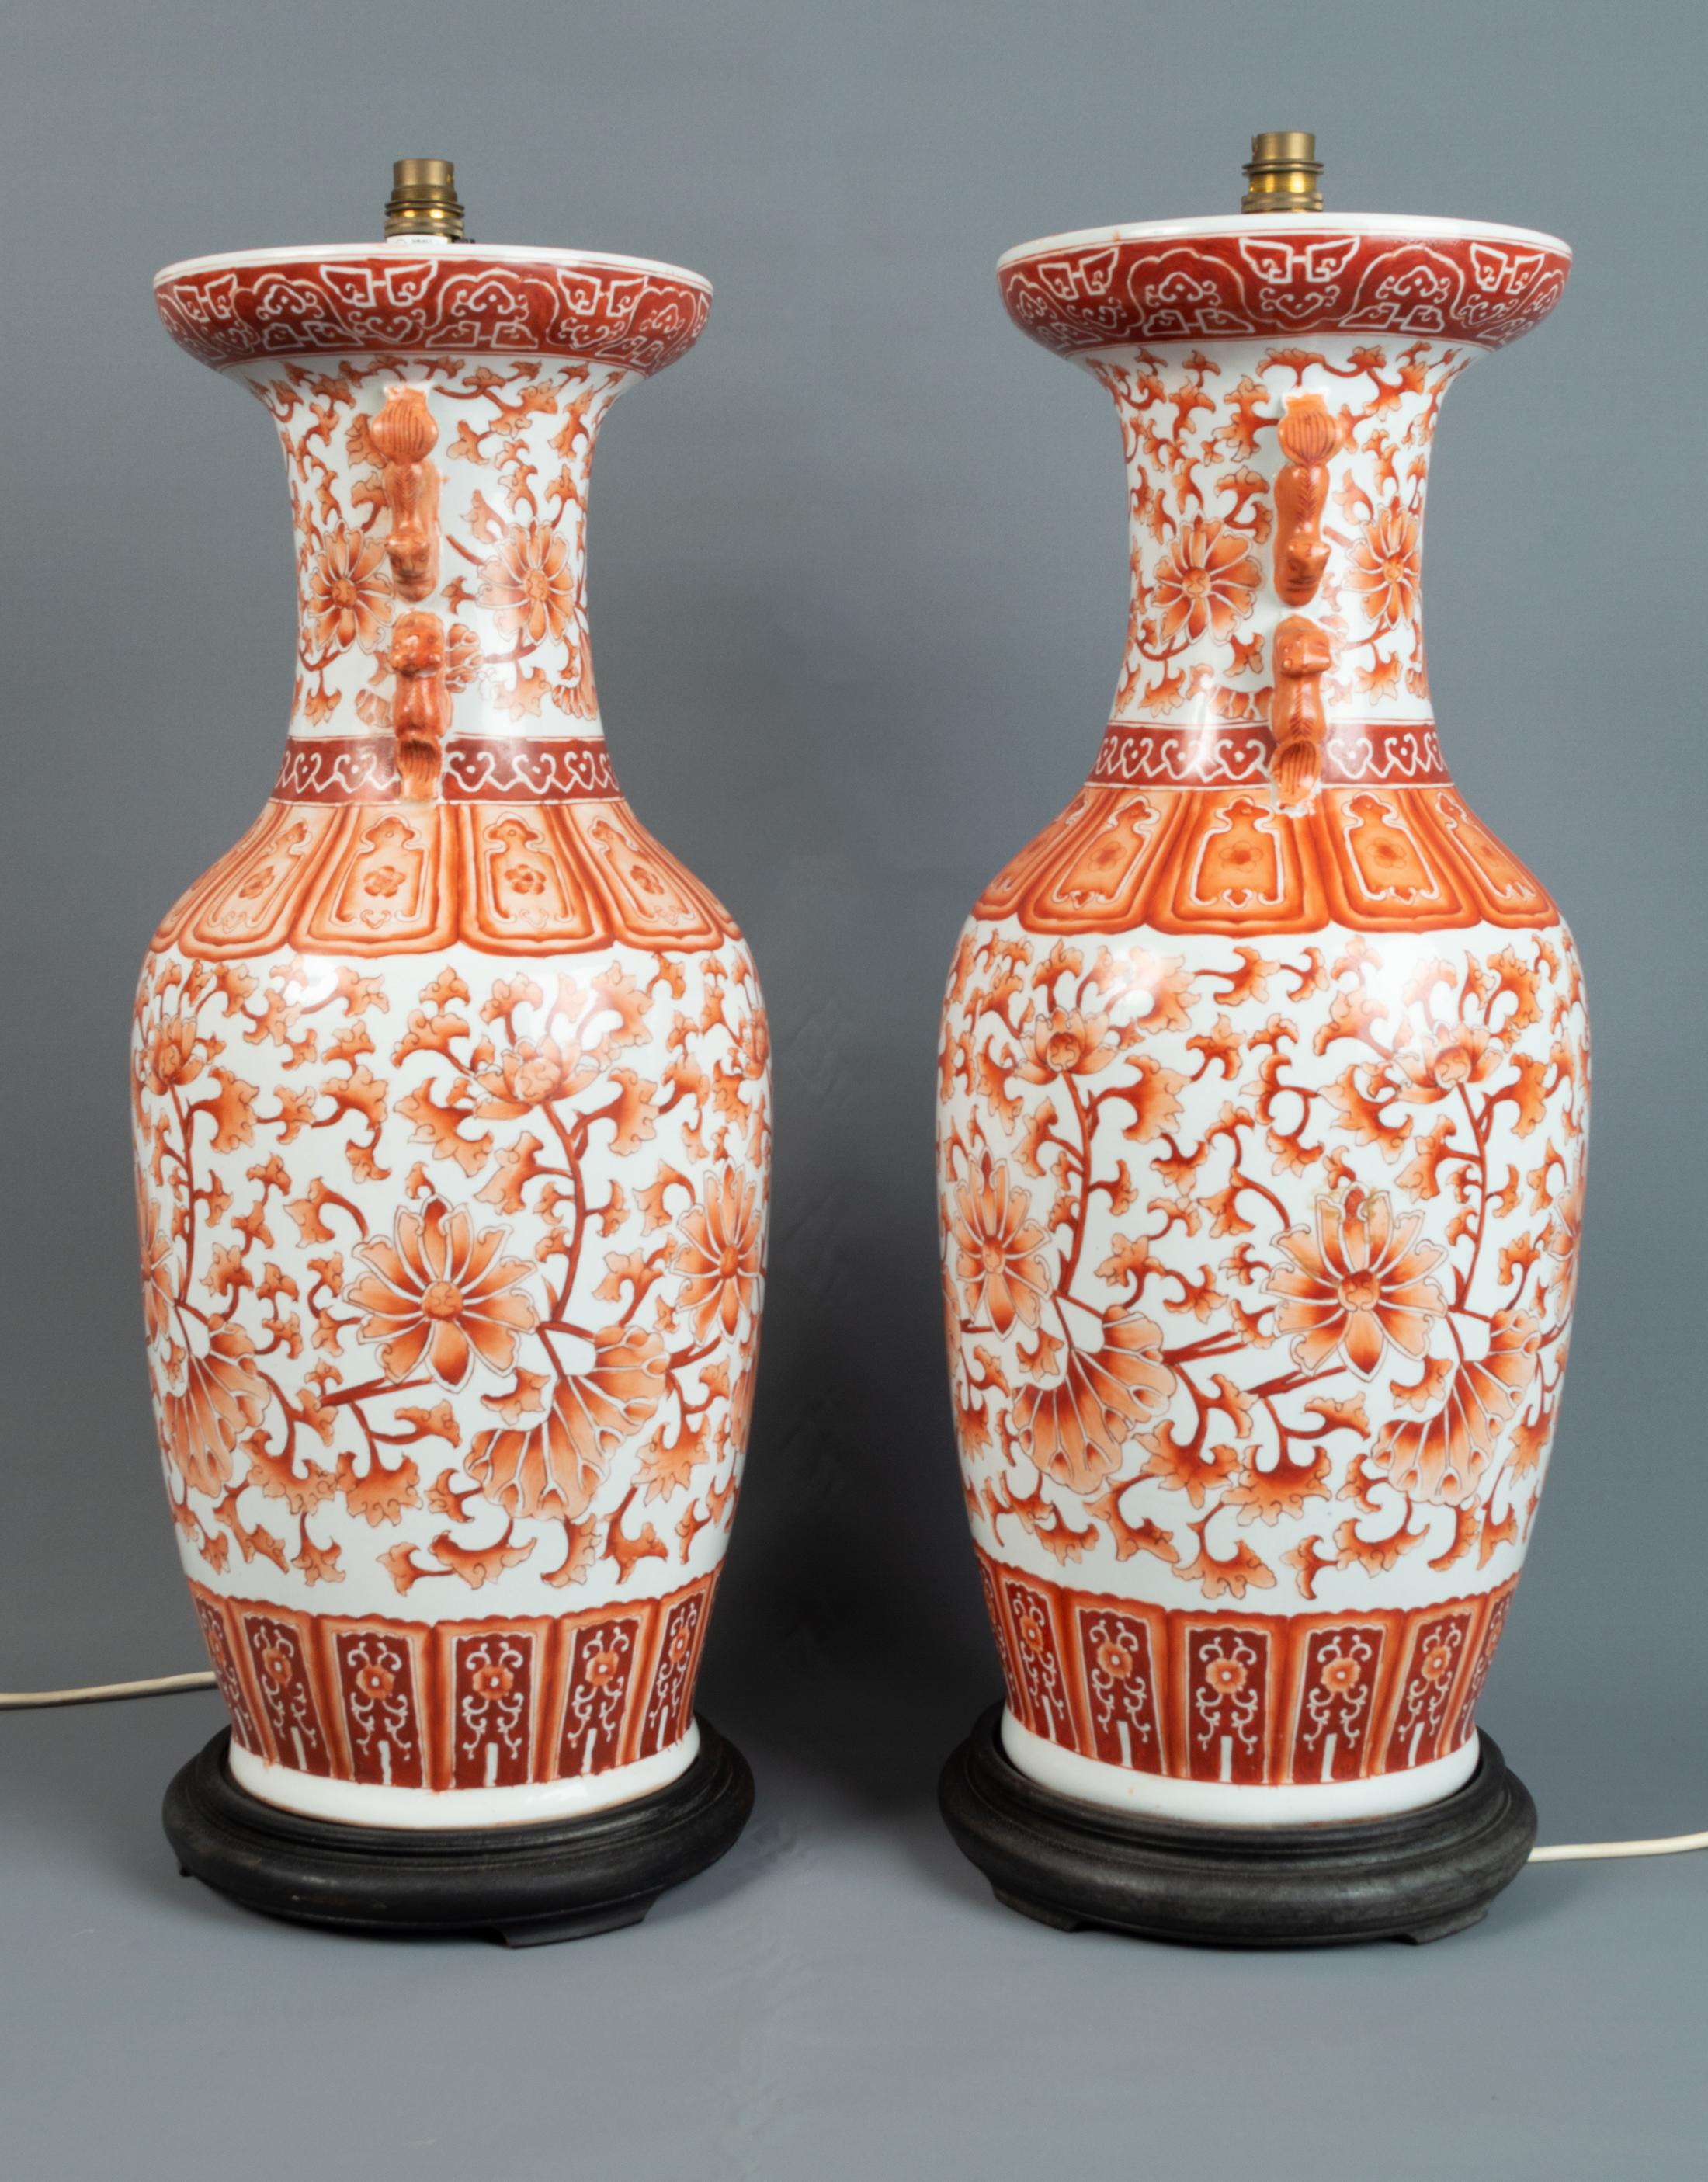 Paire de grands vases-lampes en porcelaine chinoise du XIXe siècle. 
Chine, A.C.C.

La porcelaine à fond blanc décorée en orange et rouille de motifs de feuillage et de fleurs avec des poignées appliquées en chien de fusil. Montés sur des socles